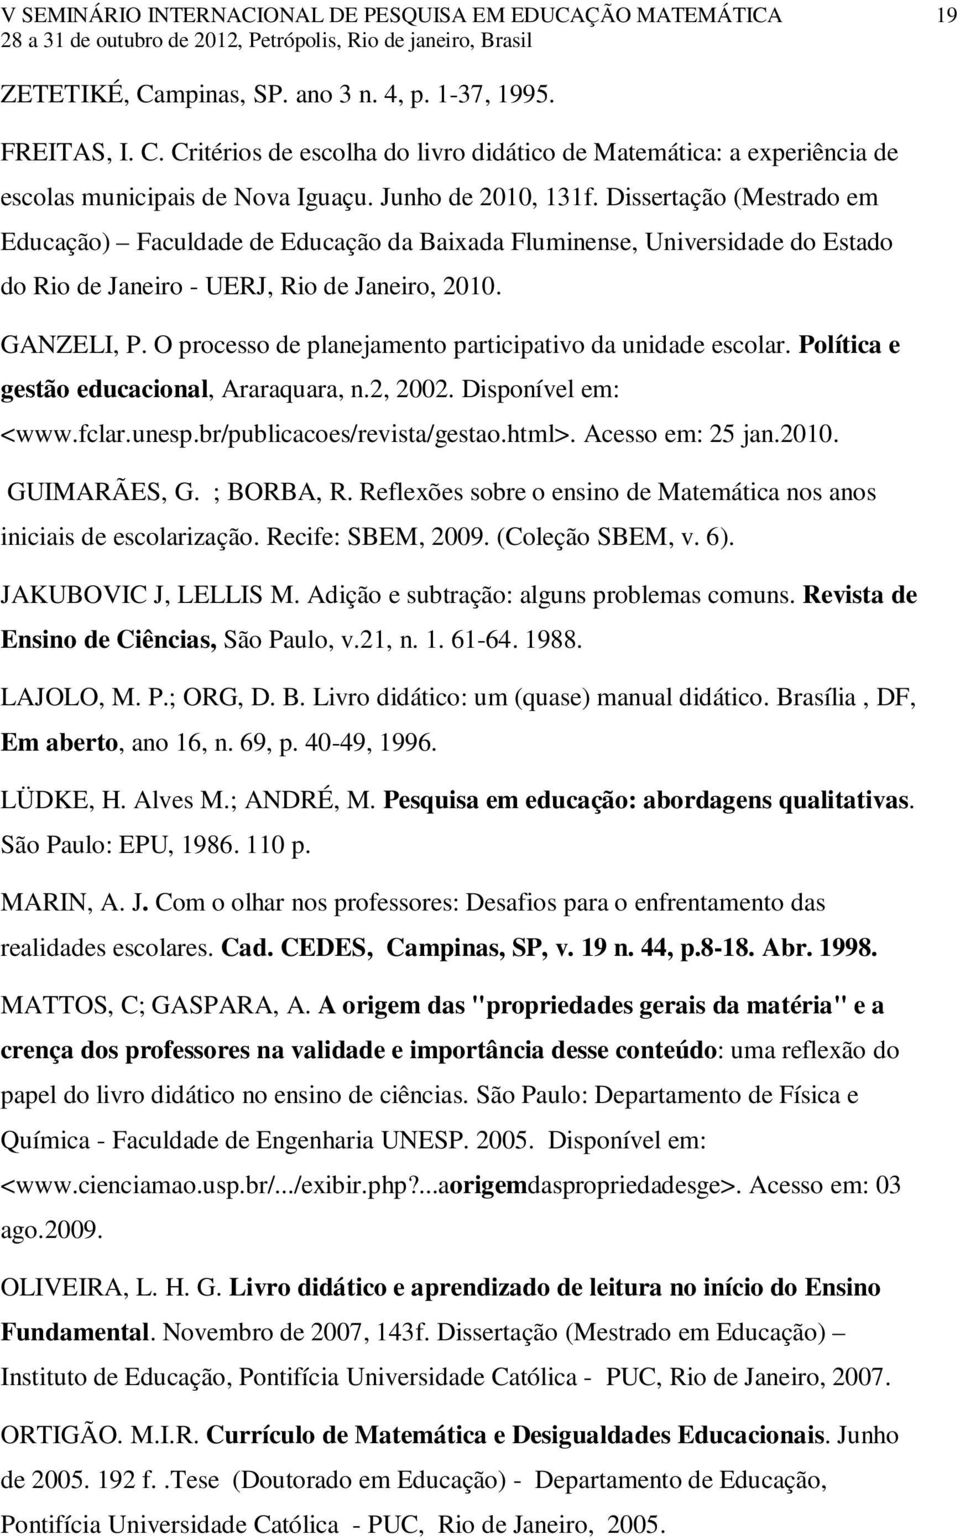 O processo de planejamento participativo da unidade escolar. Política e gestão educacional, Araraquara, n.2, 2002. Disponível em: <www.fclar.unesp.br/publicacoes/revista/gestao.html>.